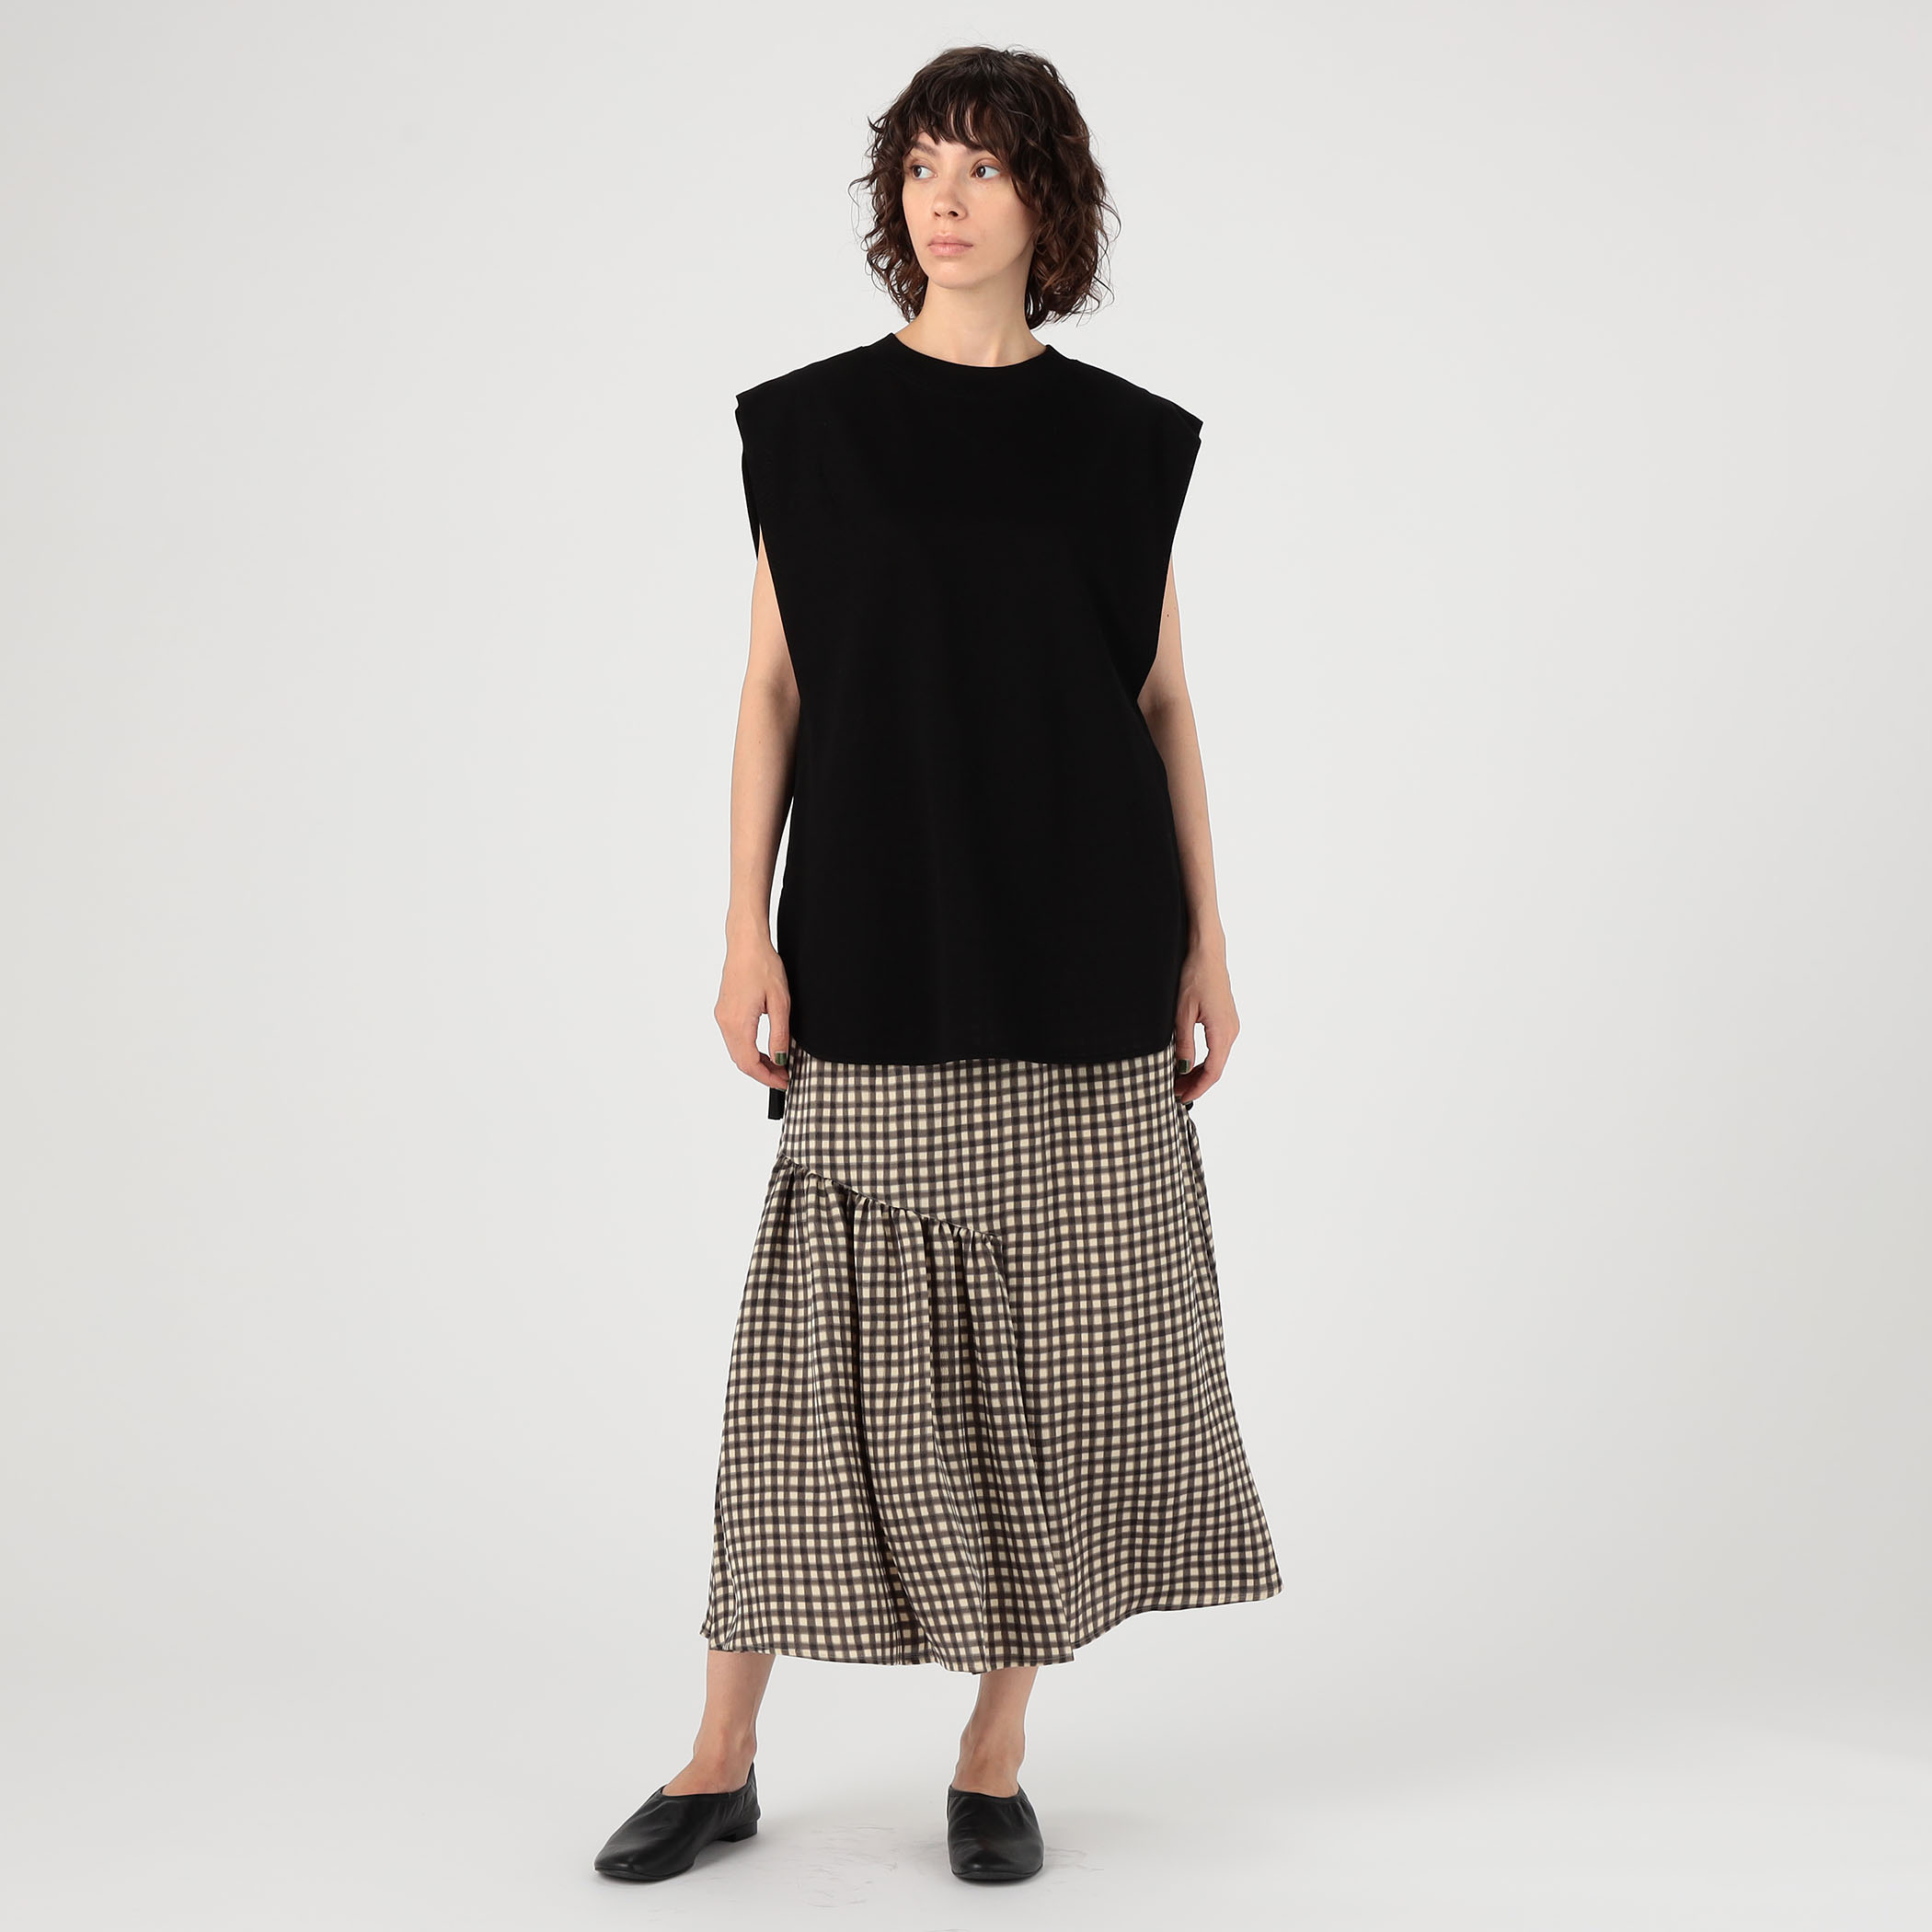 日本通販店 MACPHEE ブルリープリント アシンメトリーギャザースカート